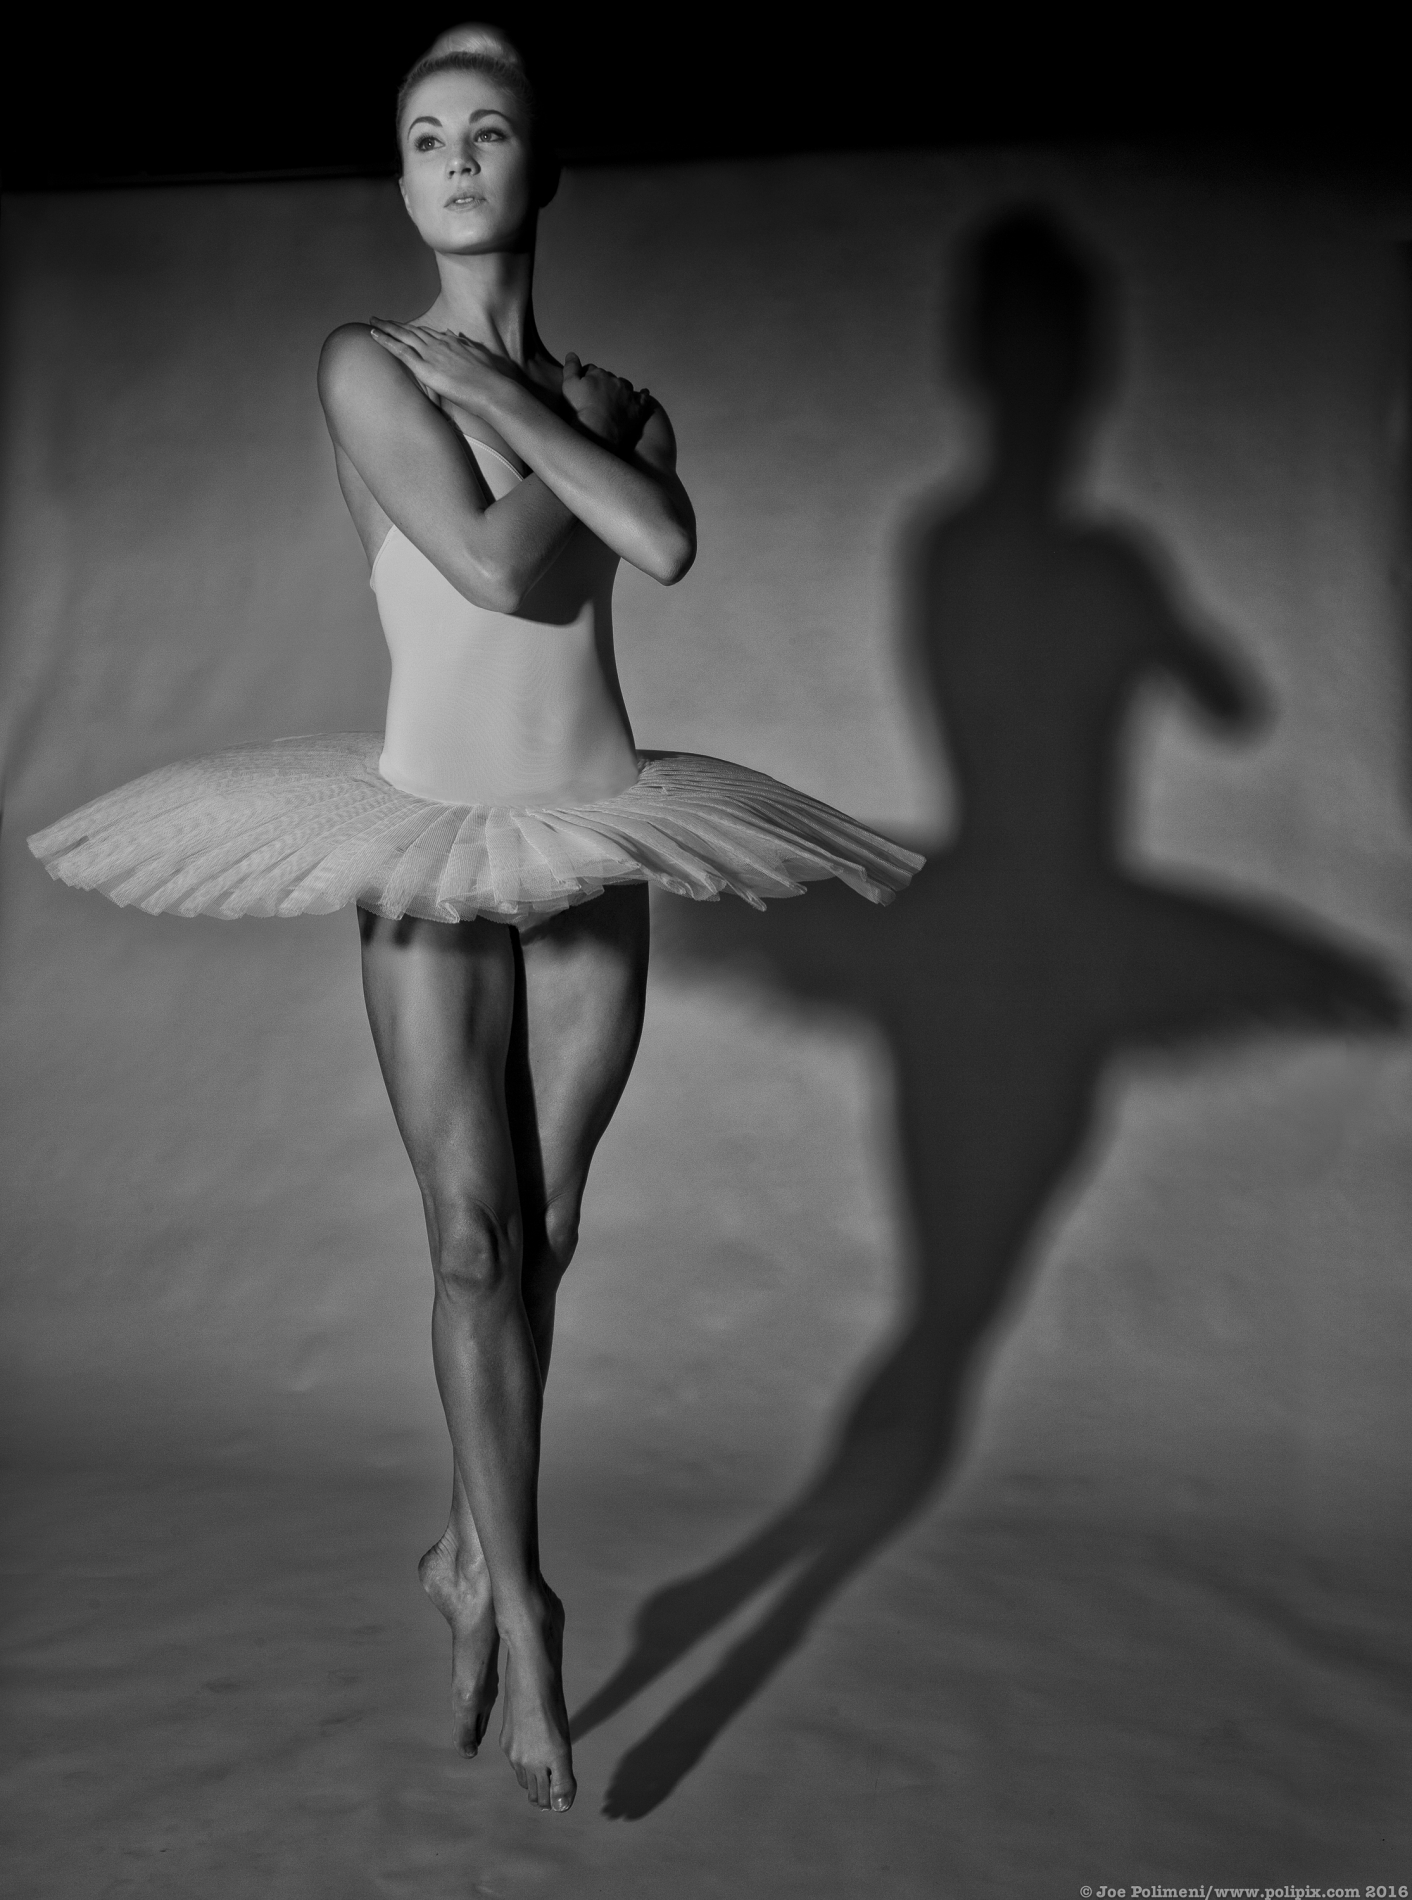 Shadow Ballerina